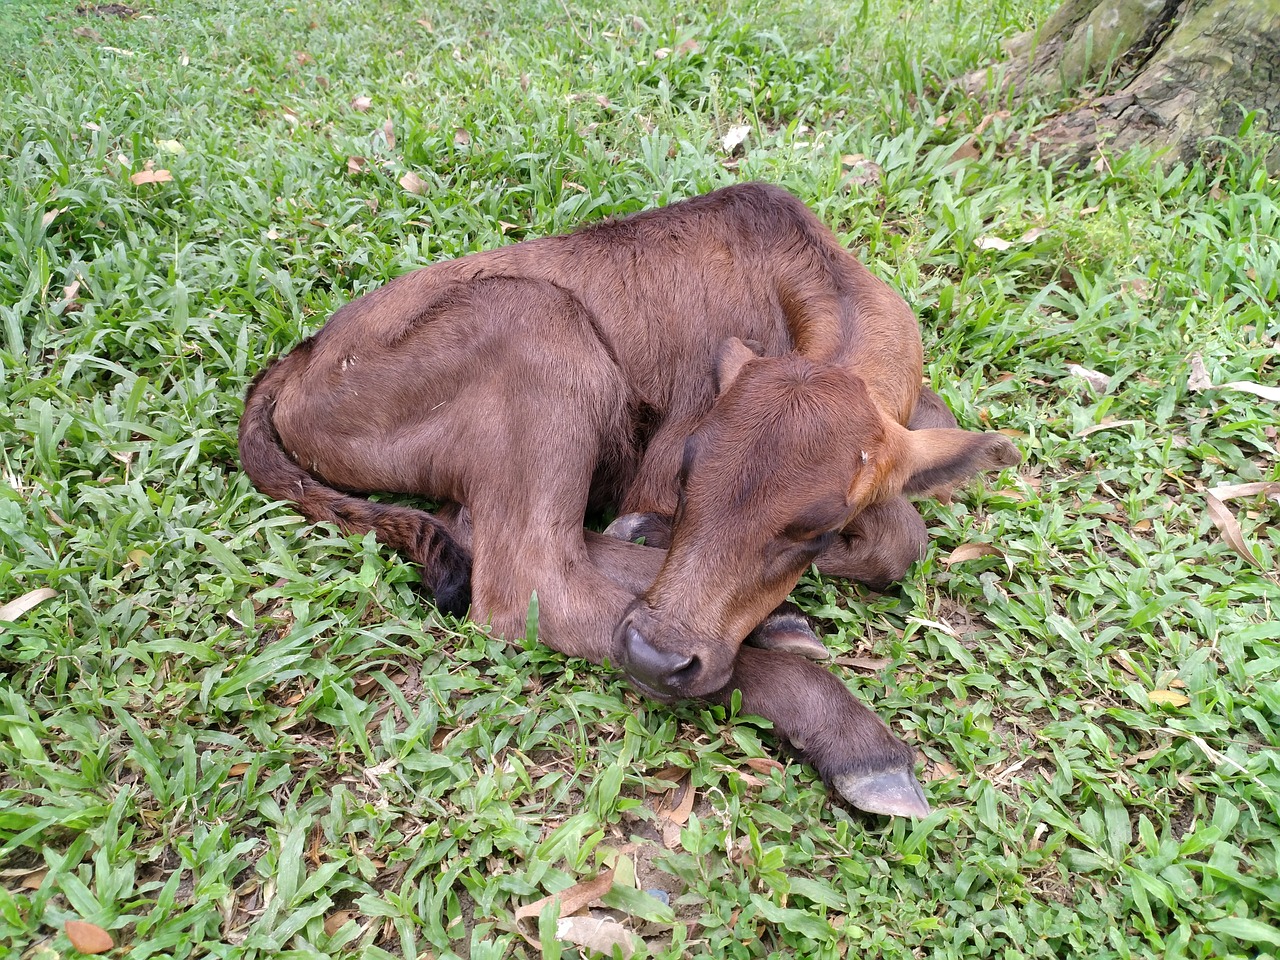 Image - calf cute calf sleeping calf